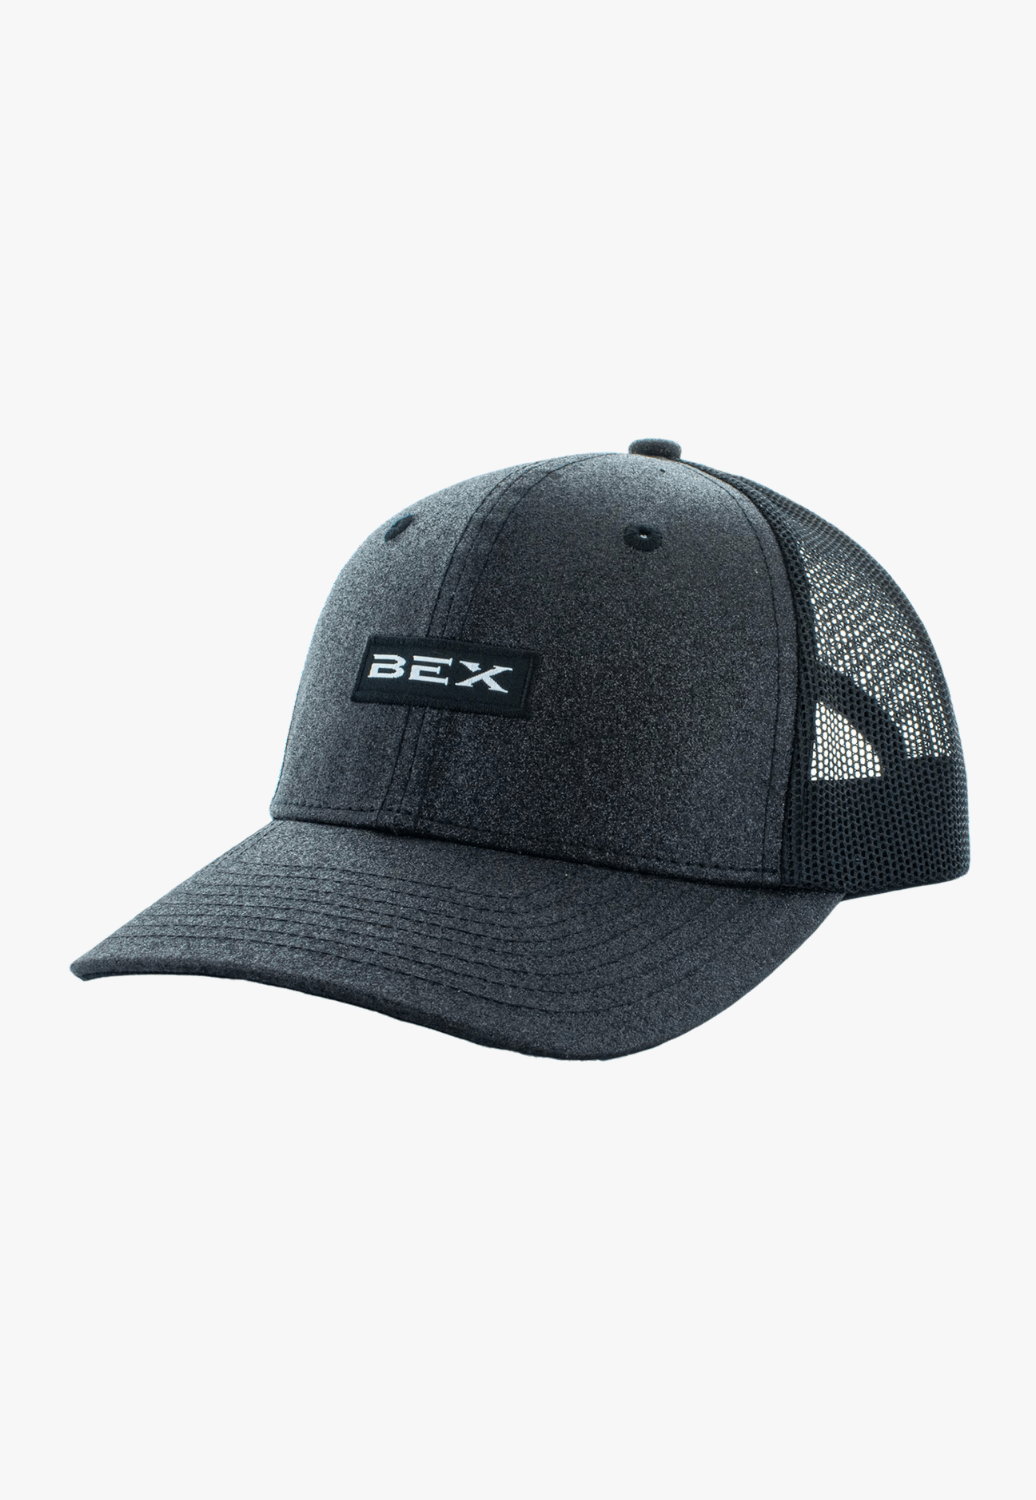 BEX HATS - Caps Black Bex Womens Glimmer Cap